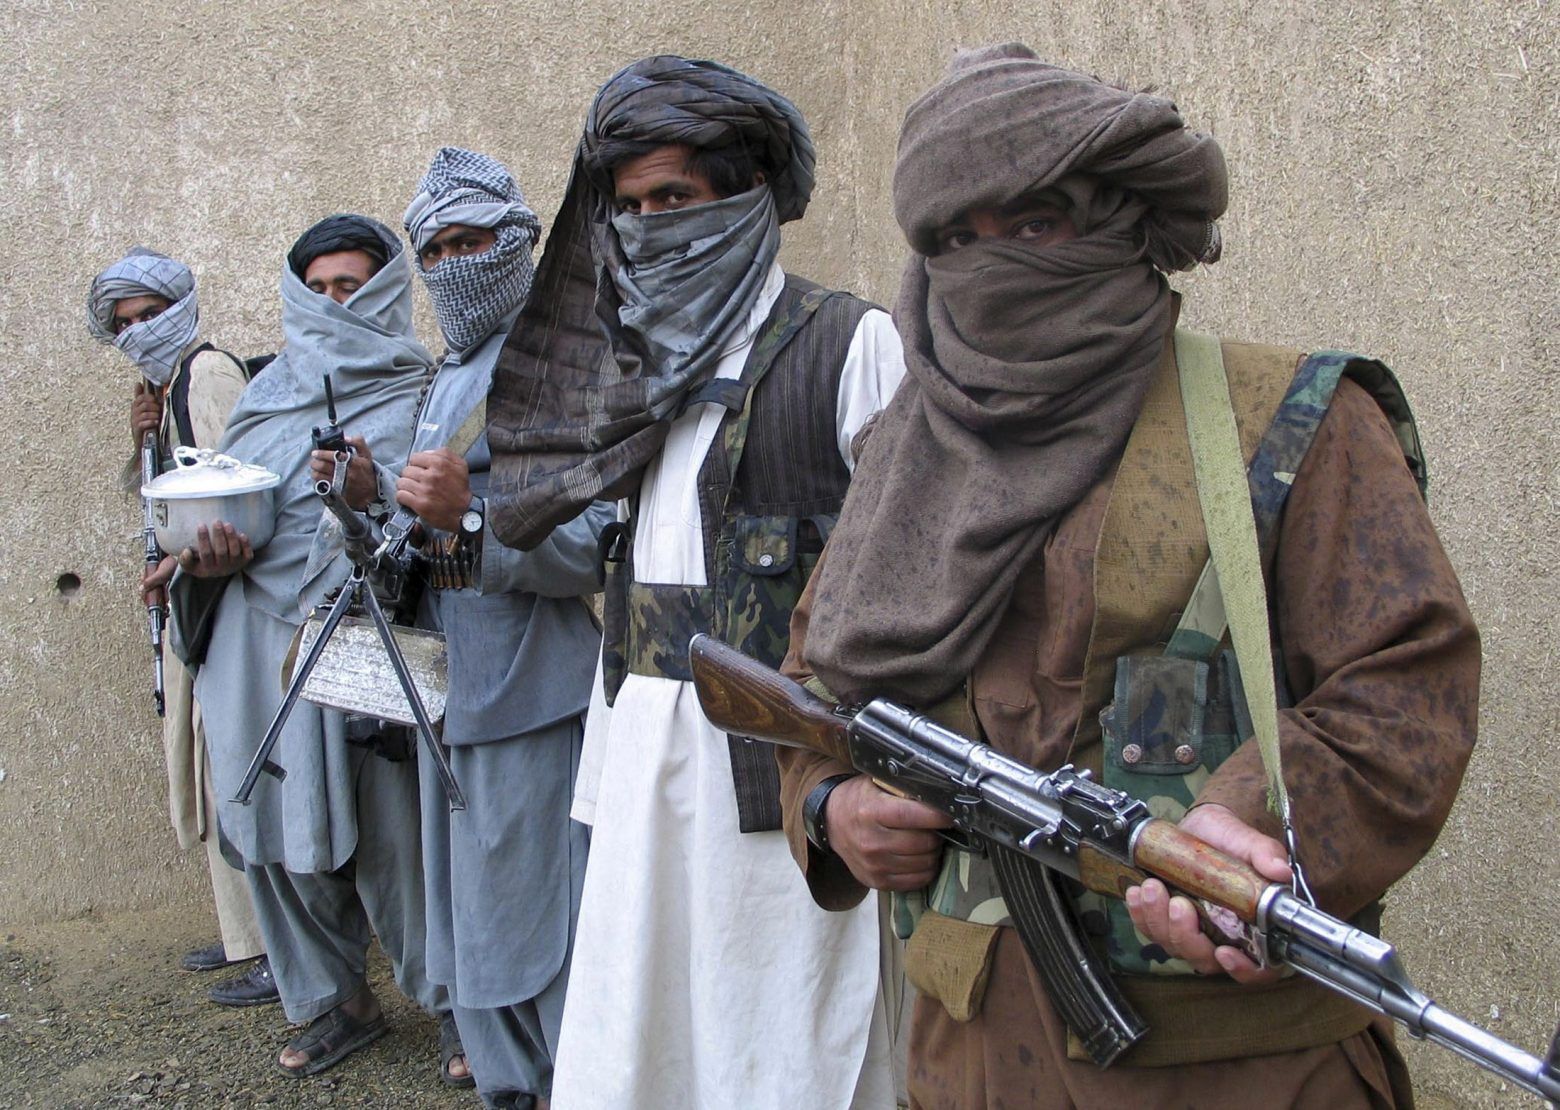 Οι Ταλιμπάν ζήτησαν από το Ιράν πέρασμα για να συμμετάσχουν στον πόλεμο στο Ισραήλ